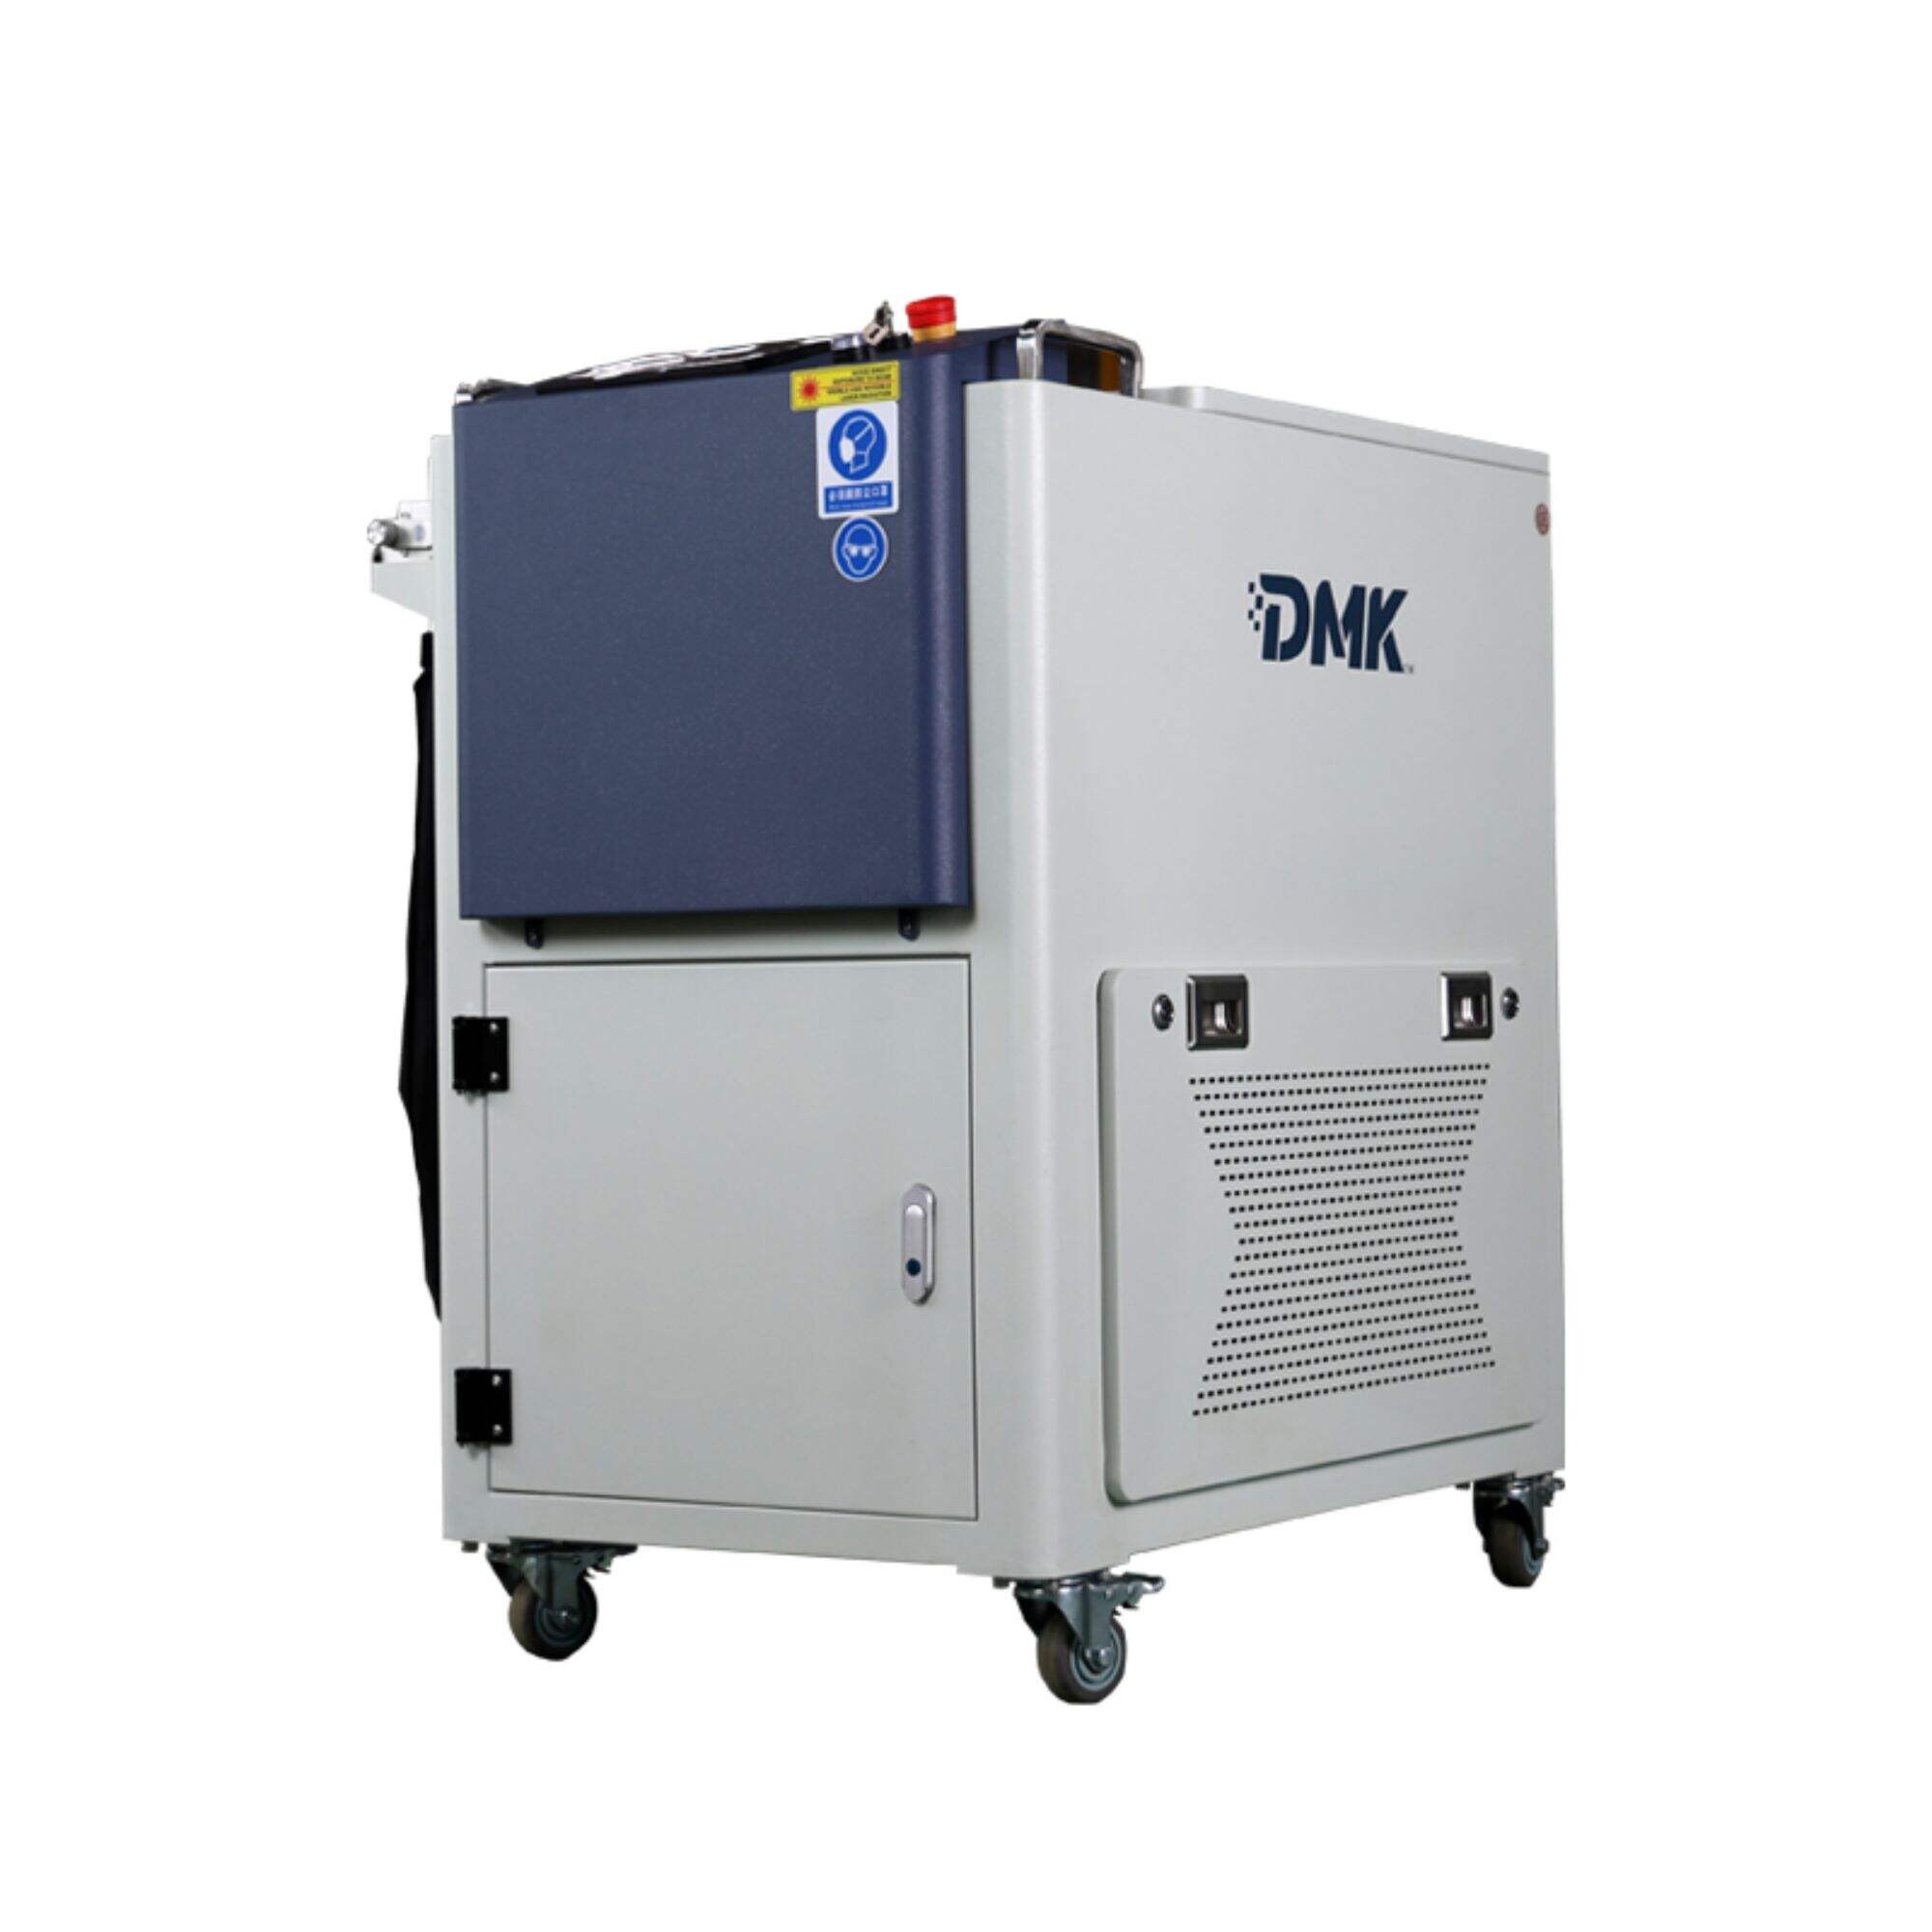 DMK El Tipi 2000W CW Lazer Gravür Temizleme Makinesi